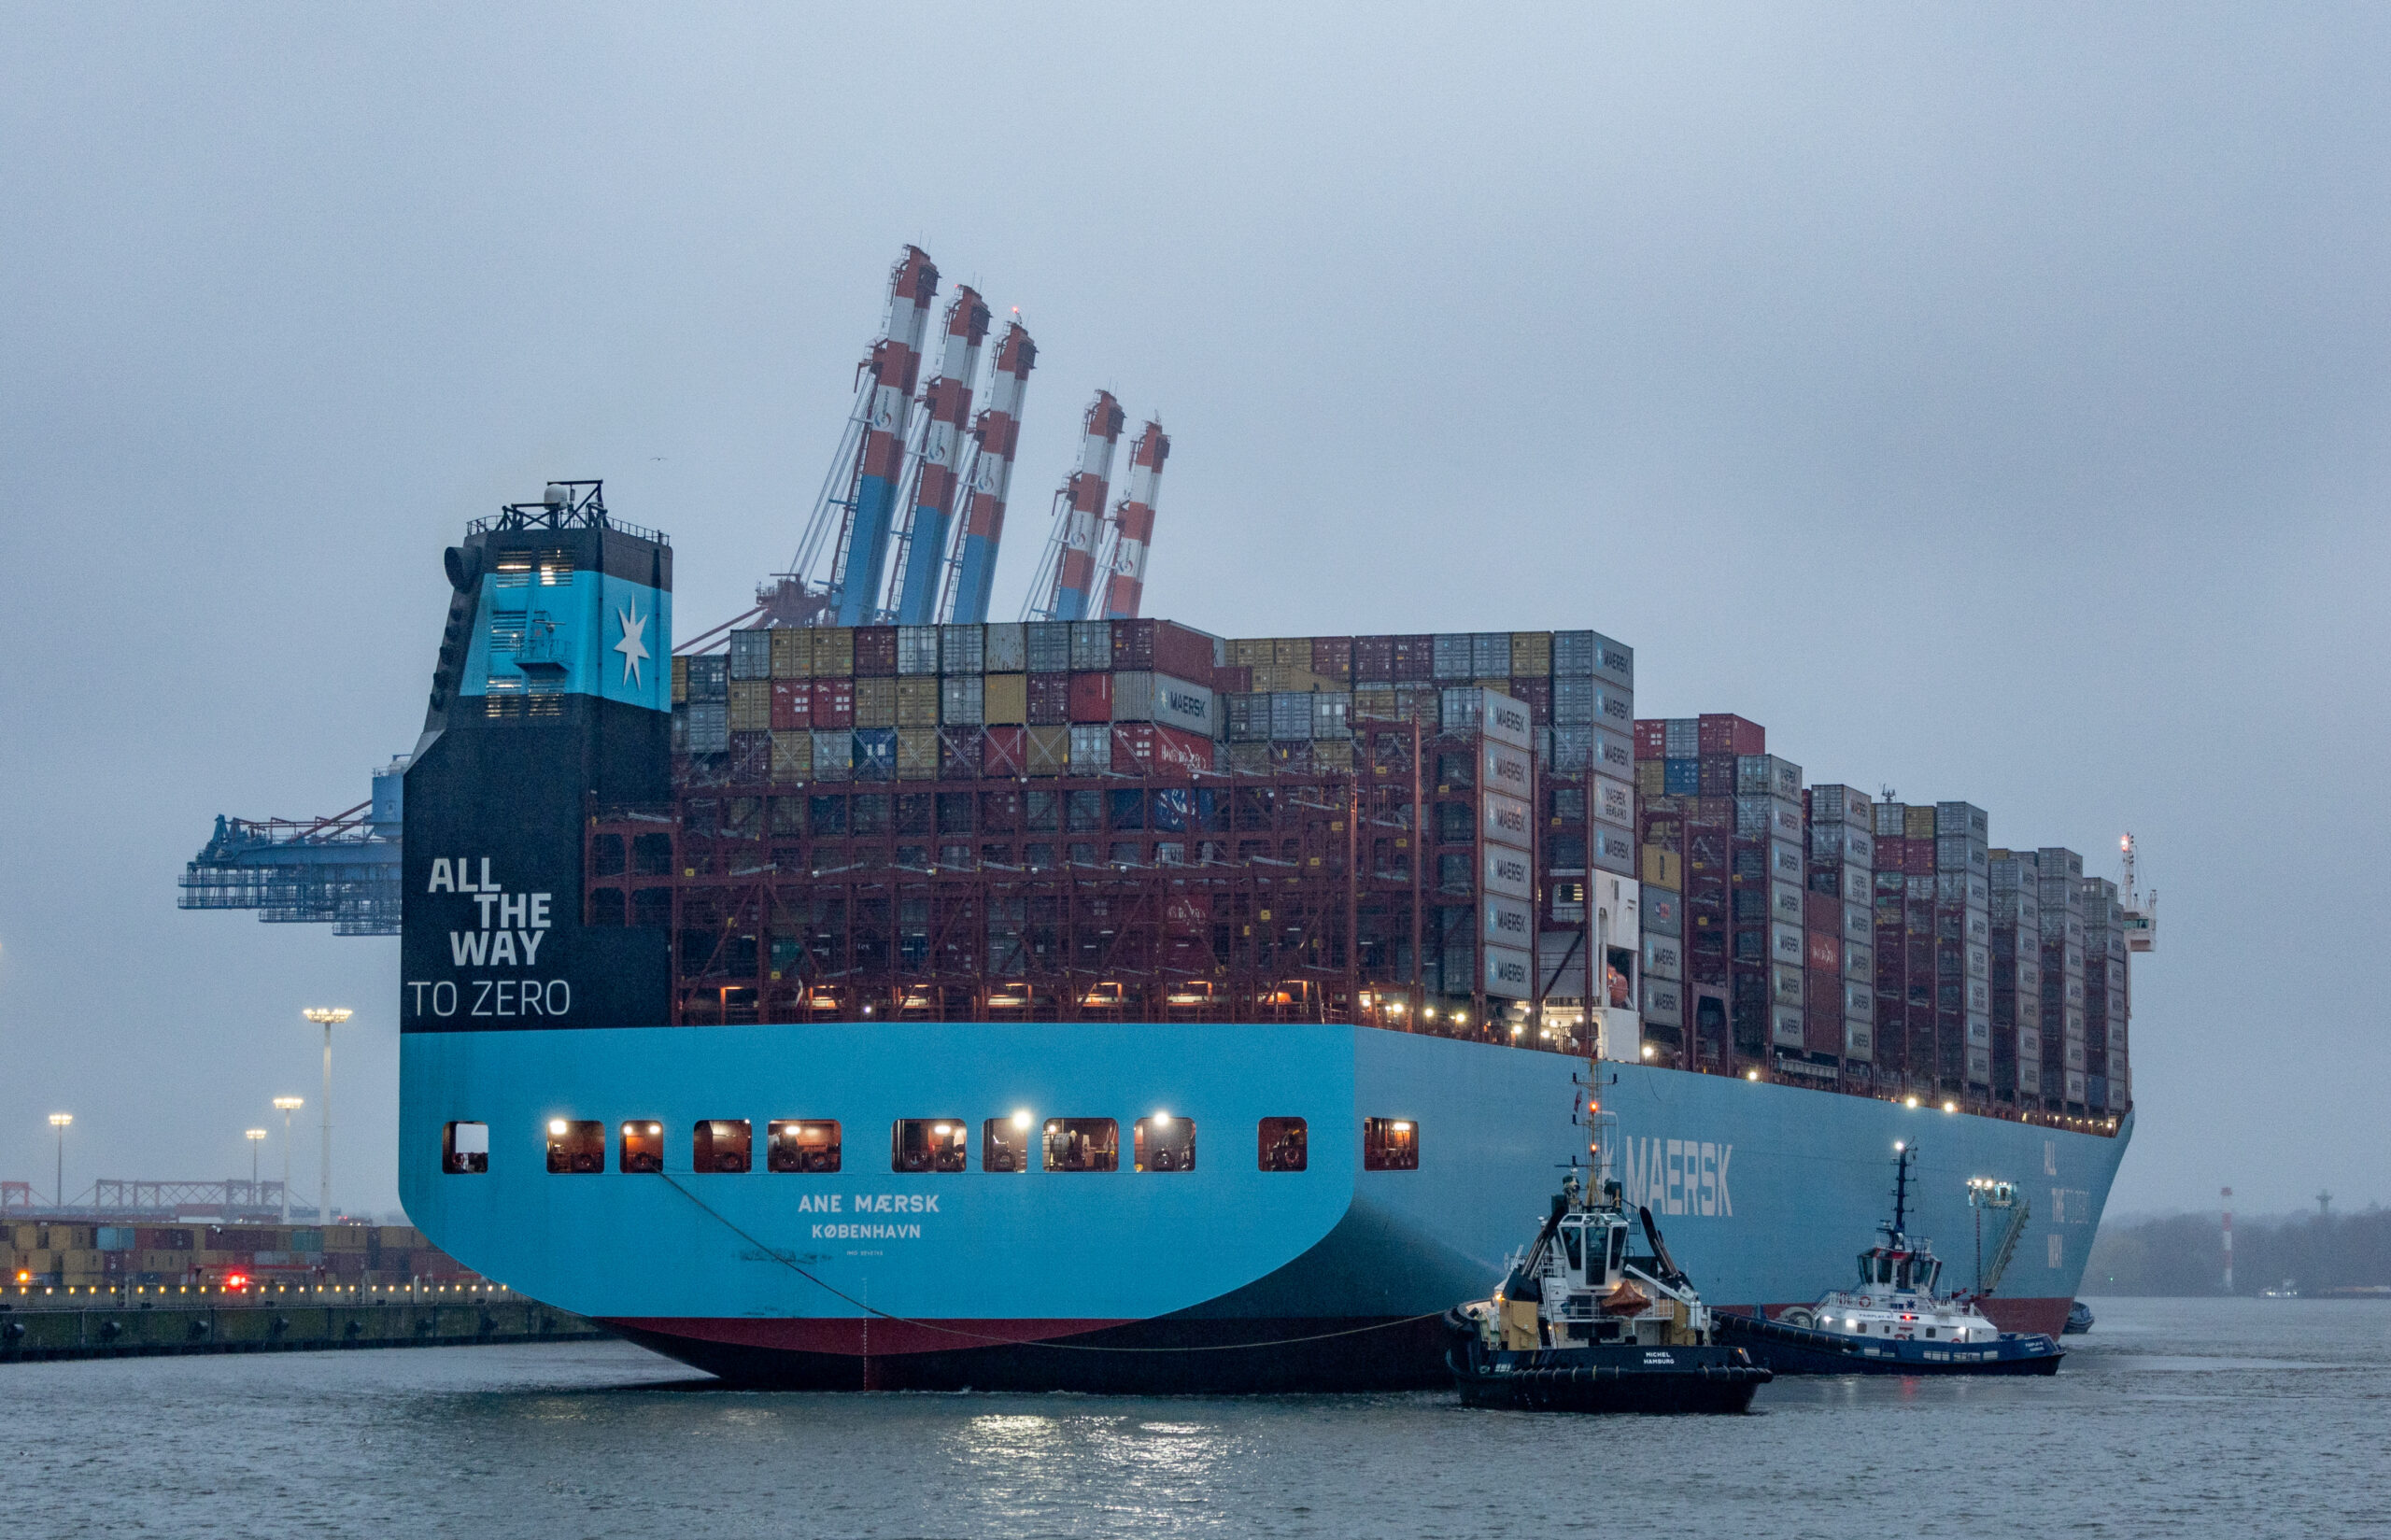 Das weltweit erste große Methanol-Containerschiff, die „Ane Maersk“ der Reederei Maersk, legt am Eurogate-Containerterminal im Hamburger Hafen an.